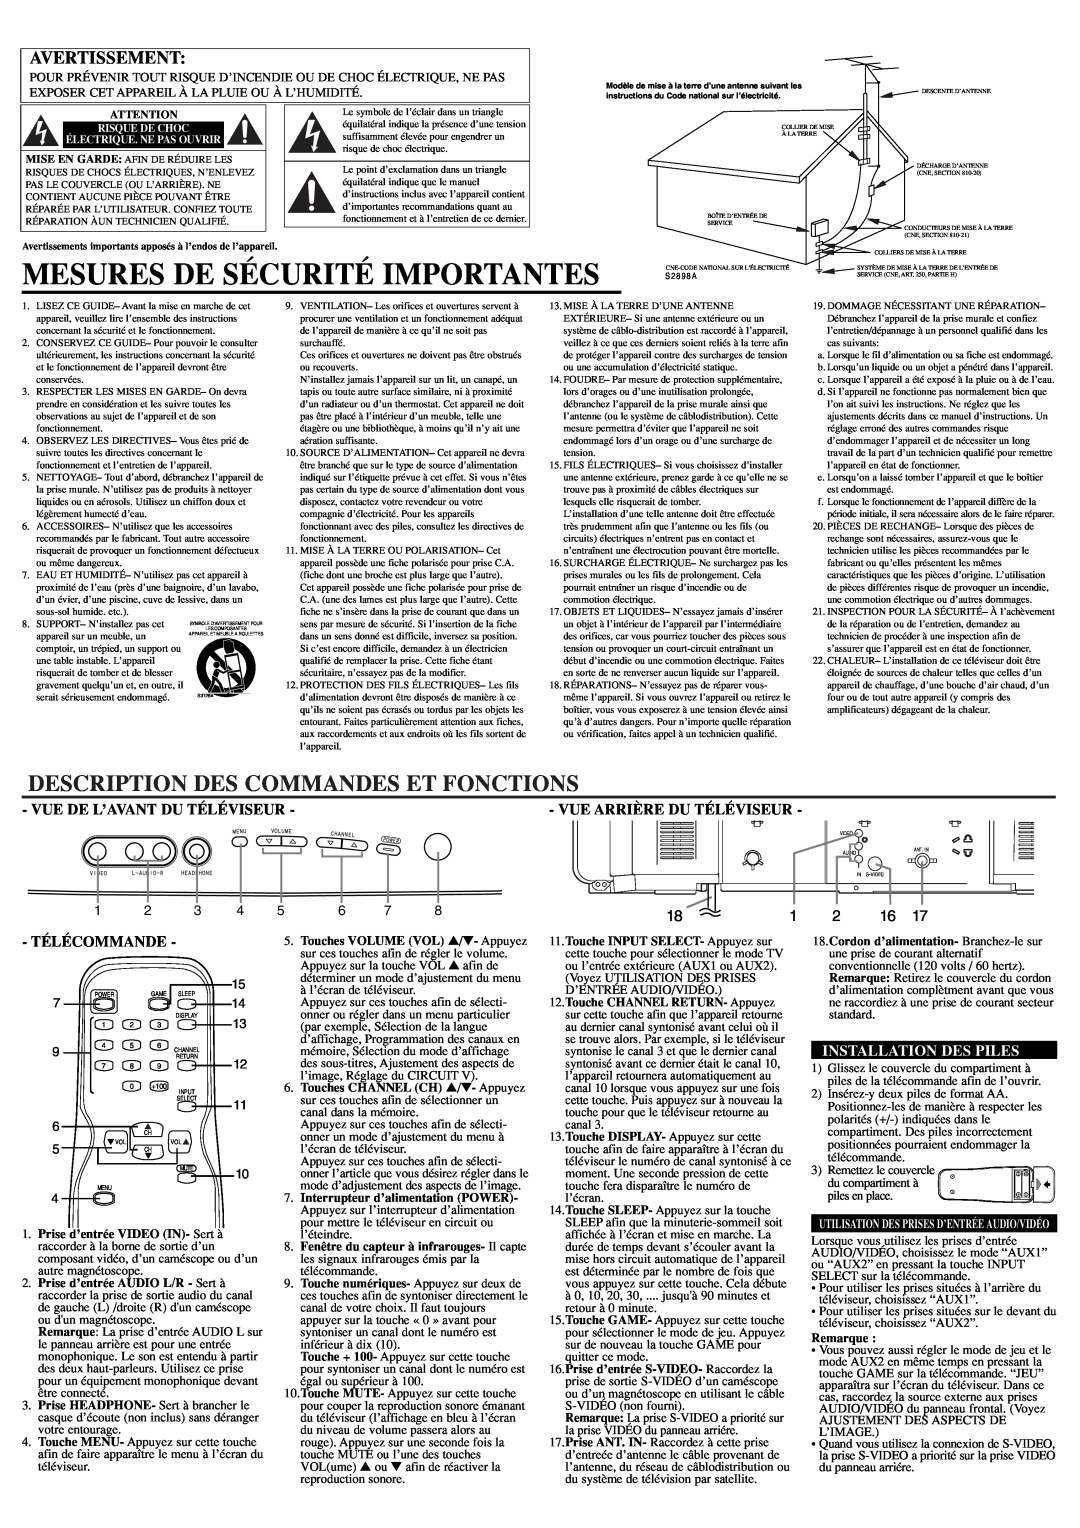 Sylvania RSDCT2704R Mesures De Sécurité Importantes, Description Des Commandes Et Fonctions, Vue De L’Avant Du Téléviseur 